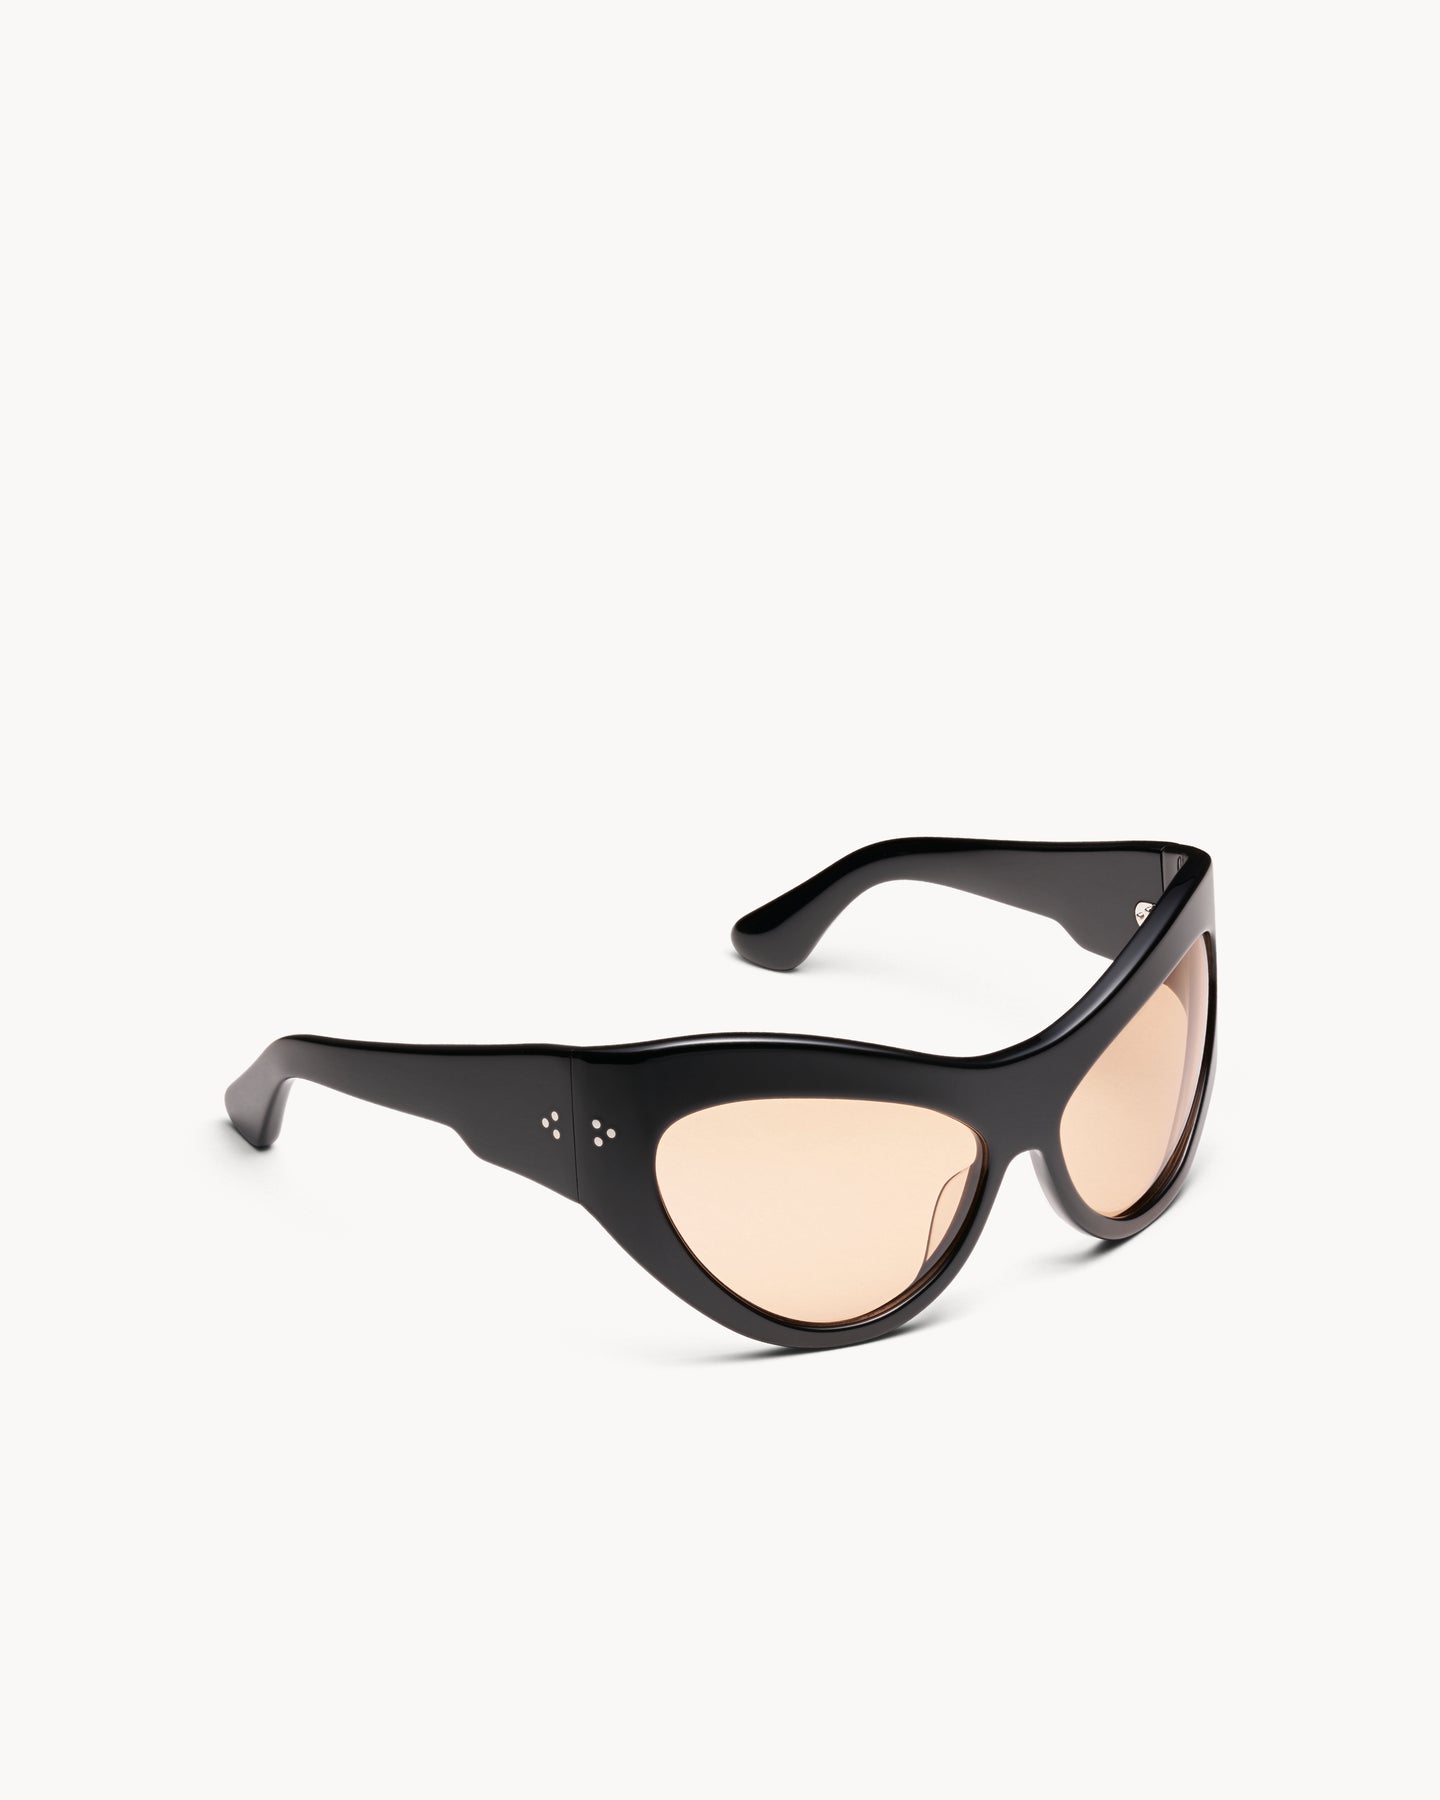 Port Tanger Darya Sunglasses in Black Acetate and Amber Lenses 2